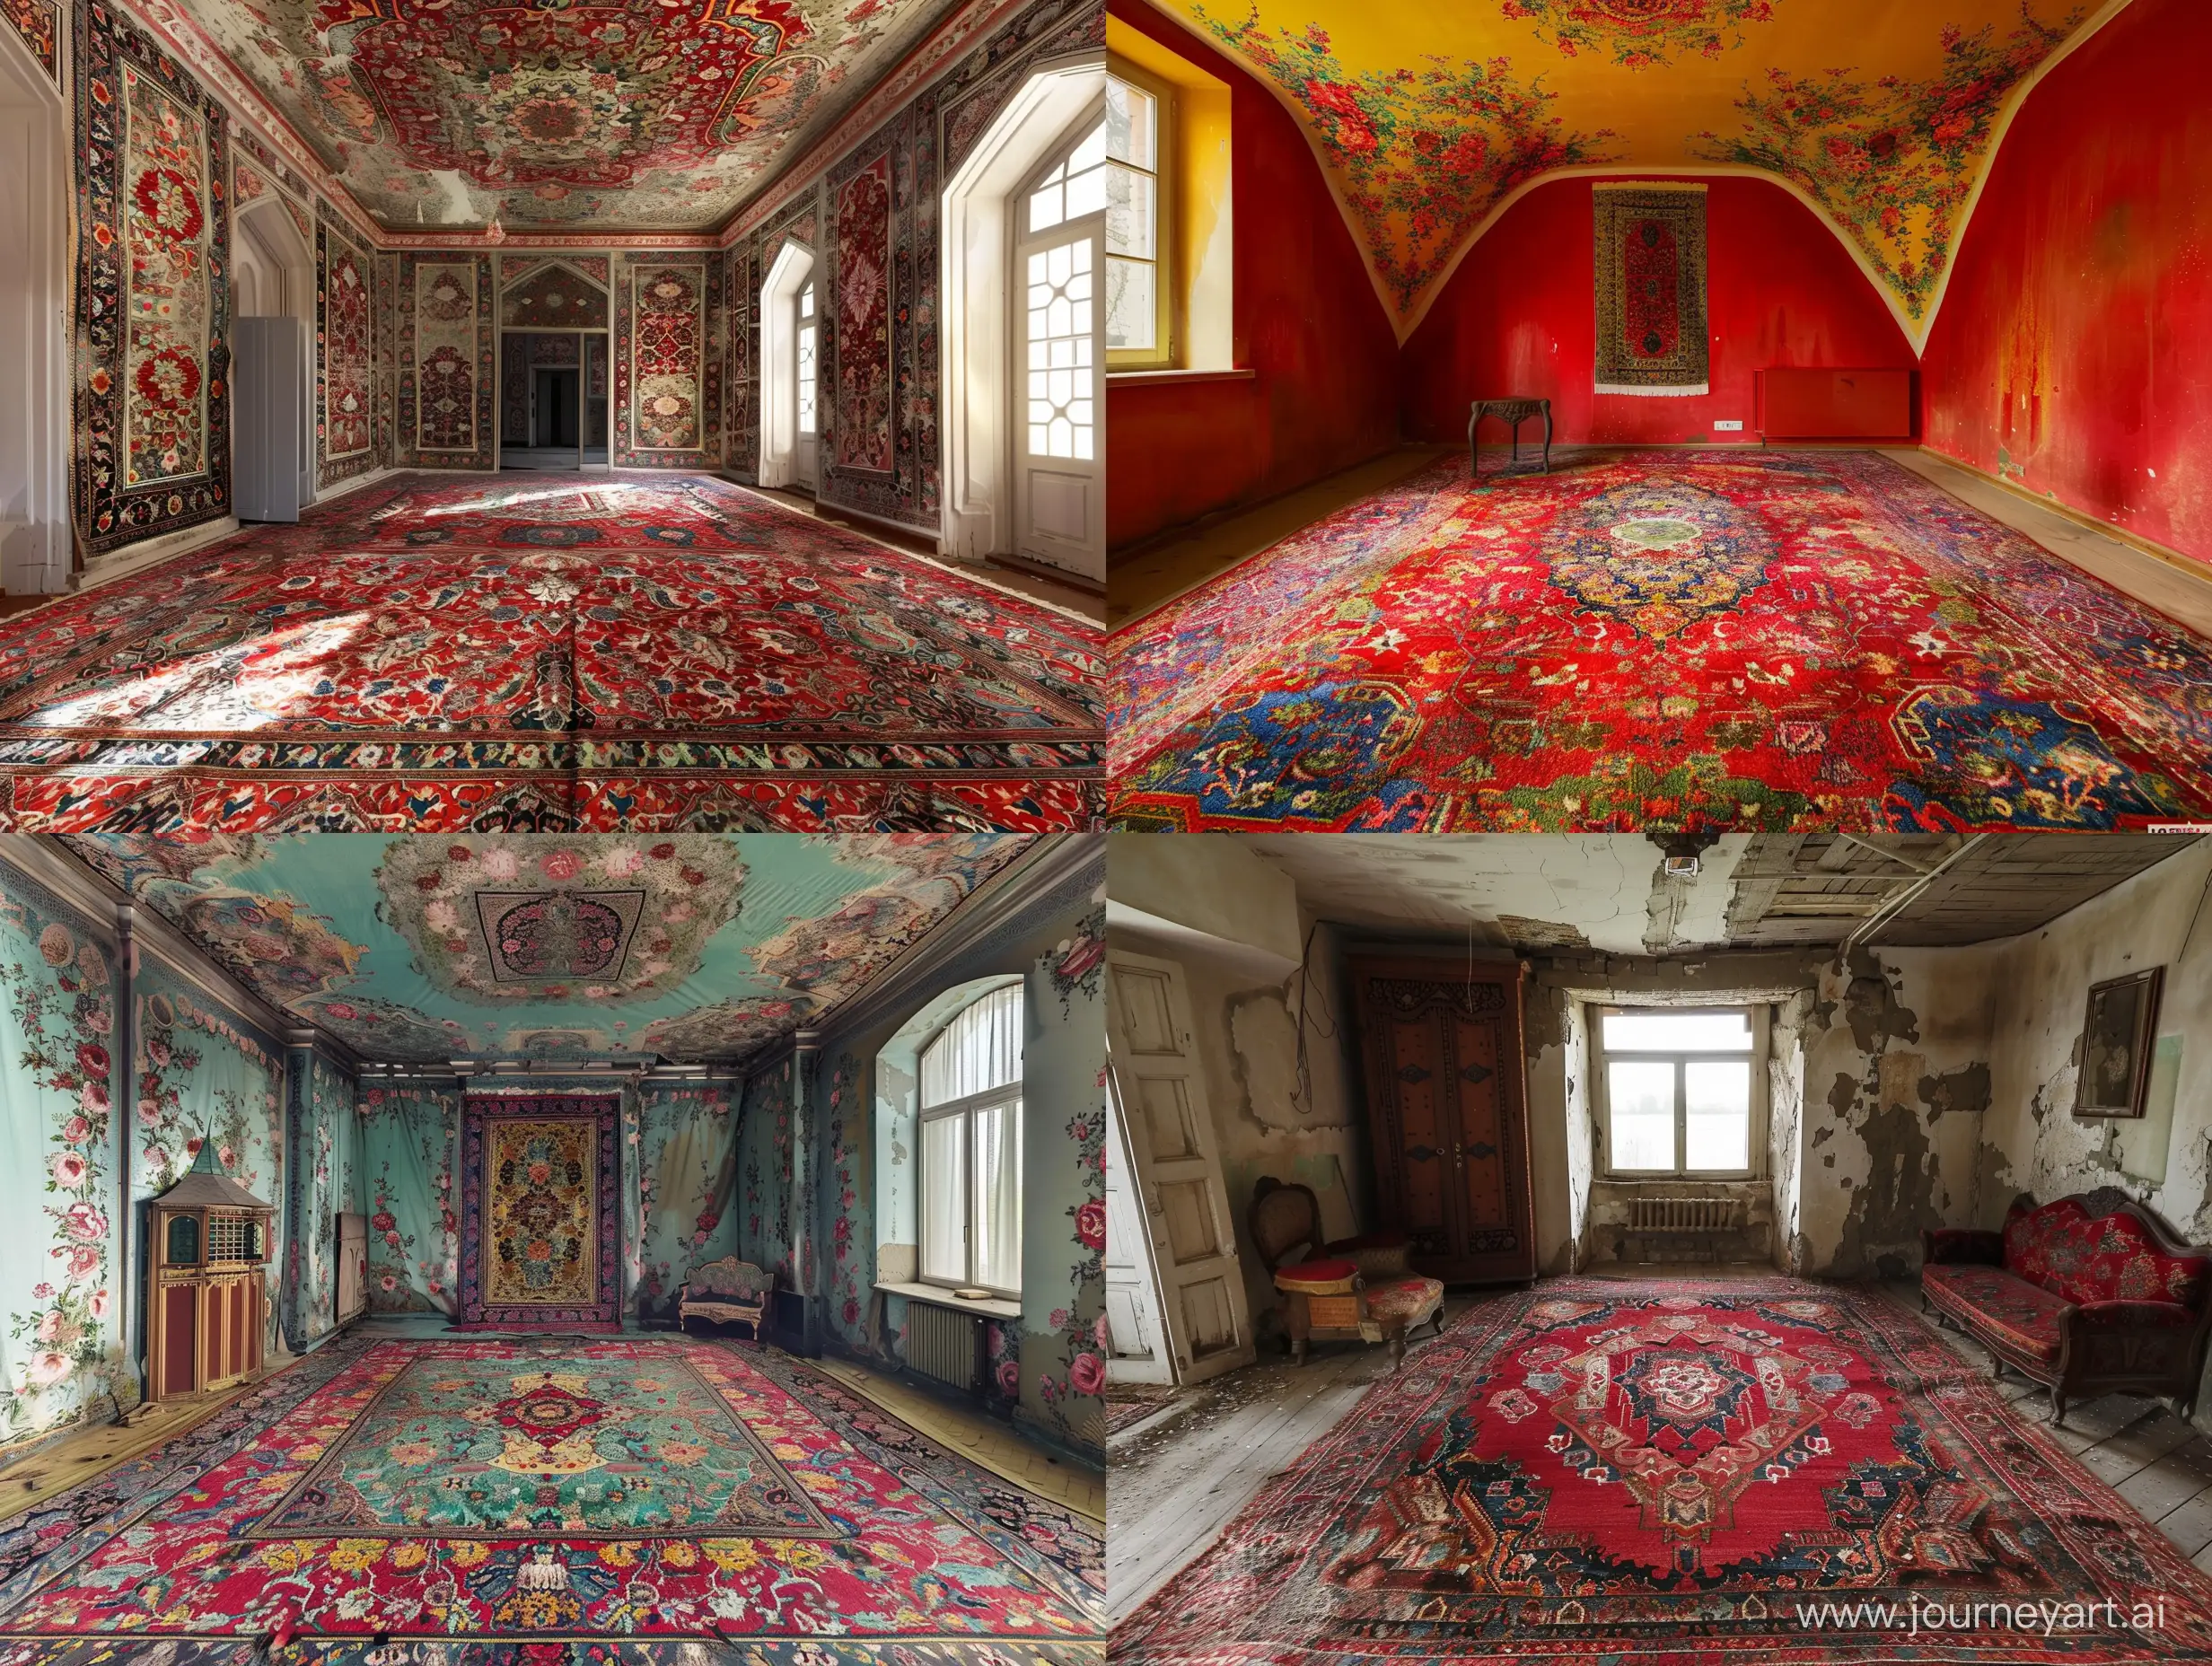 Traditional-Iranian-Carpet-Design-Adorns-Room-Interior